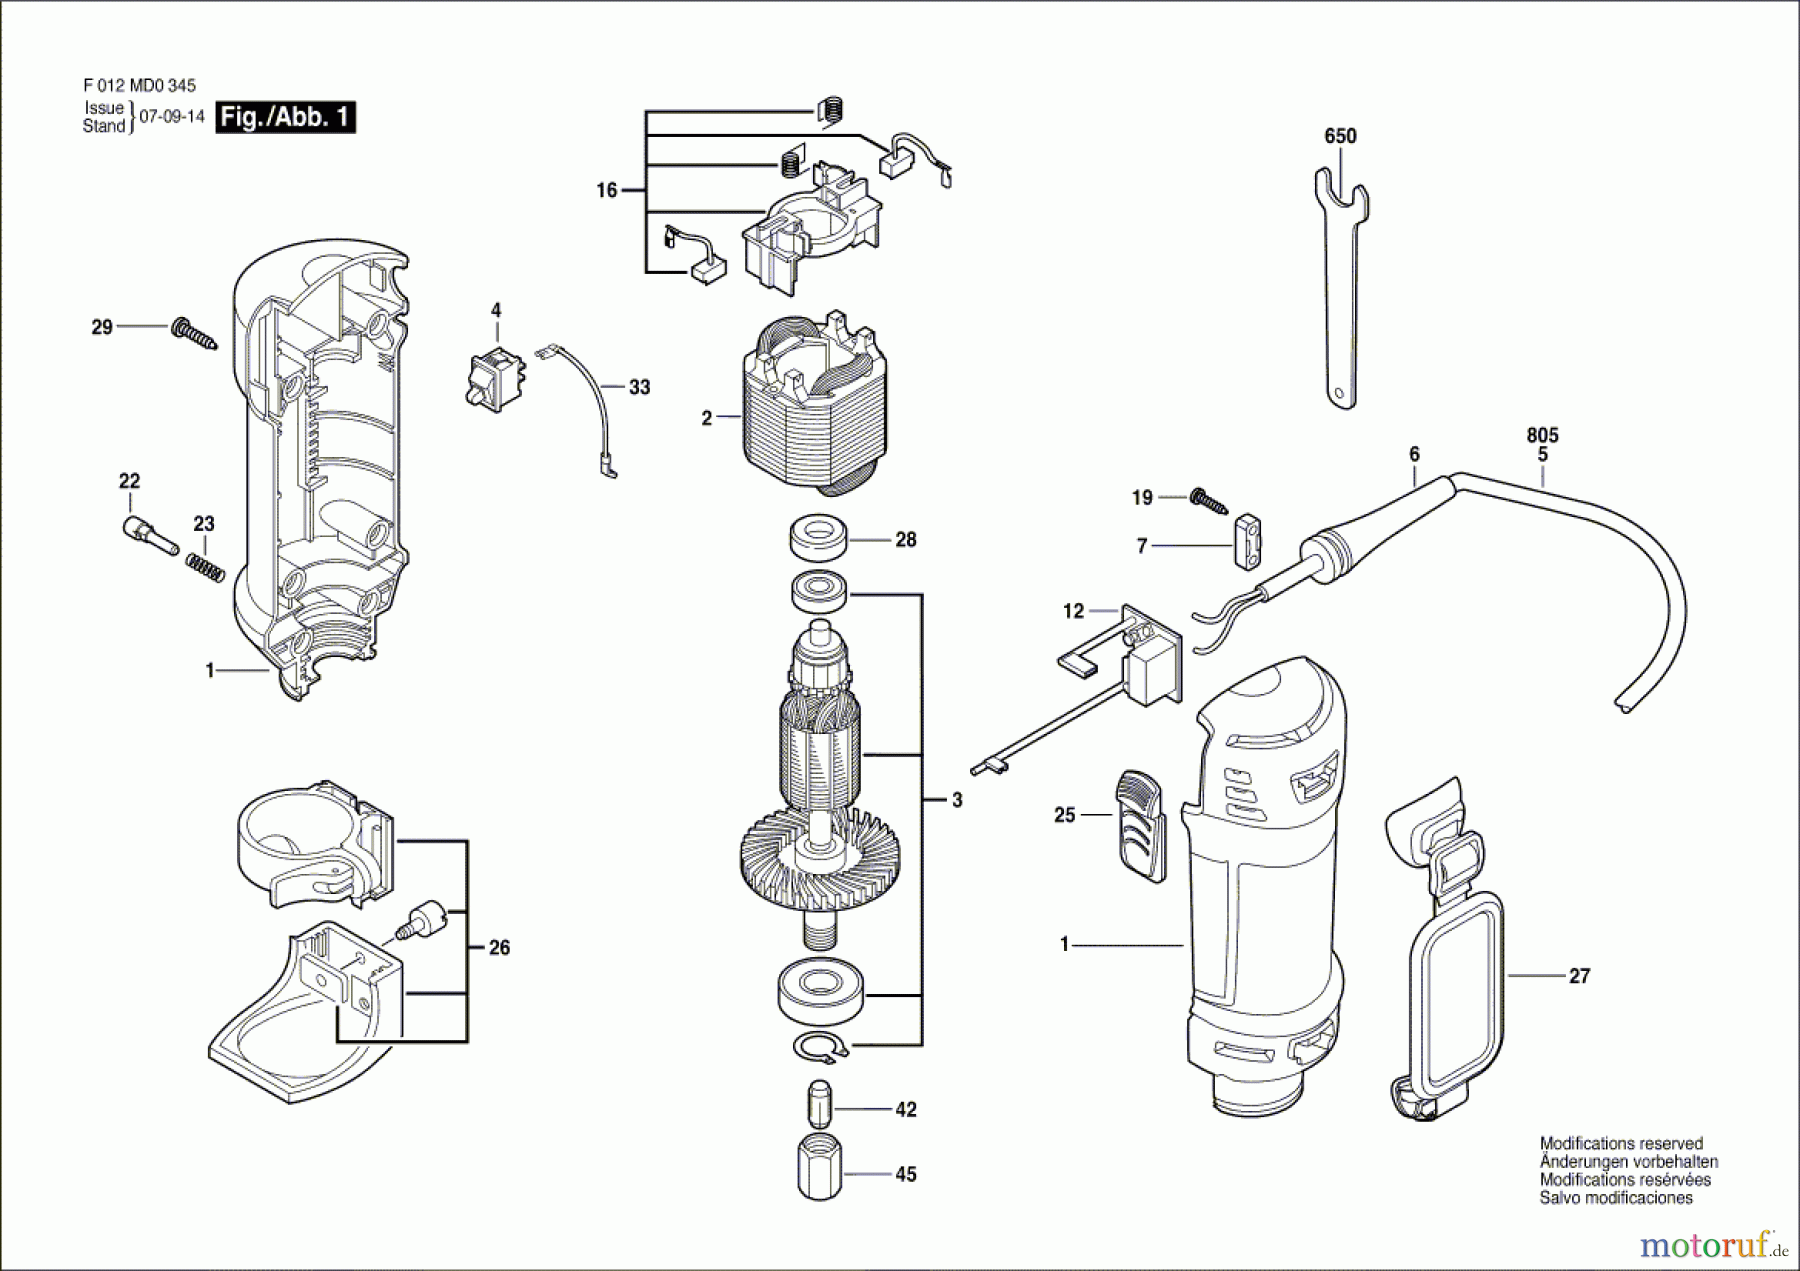  Bosch Werkzeug Rotationsschneider RZ3 Seite 1